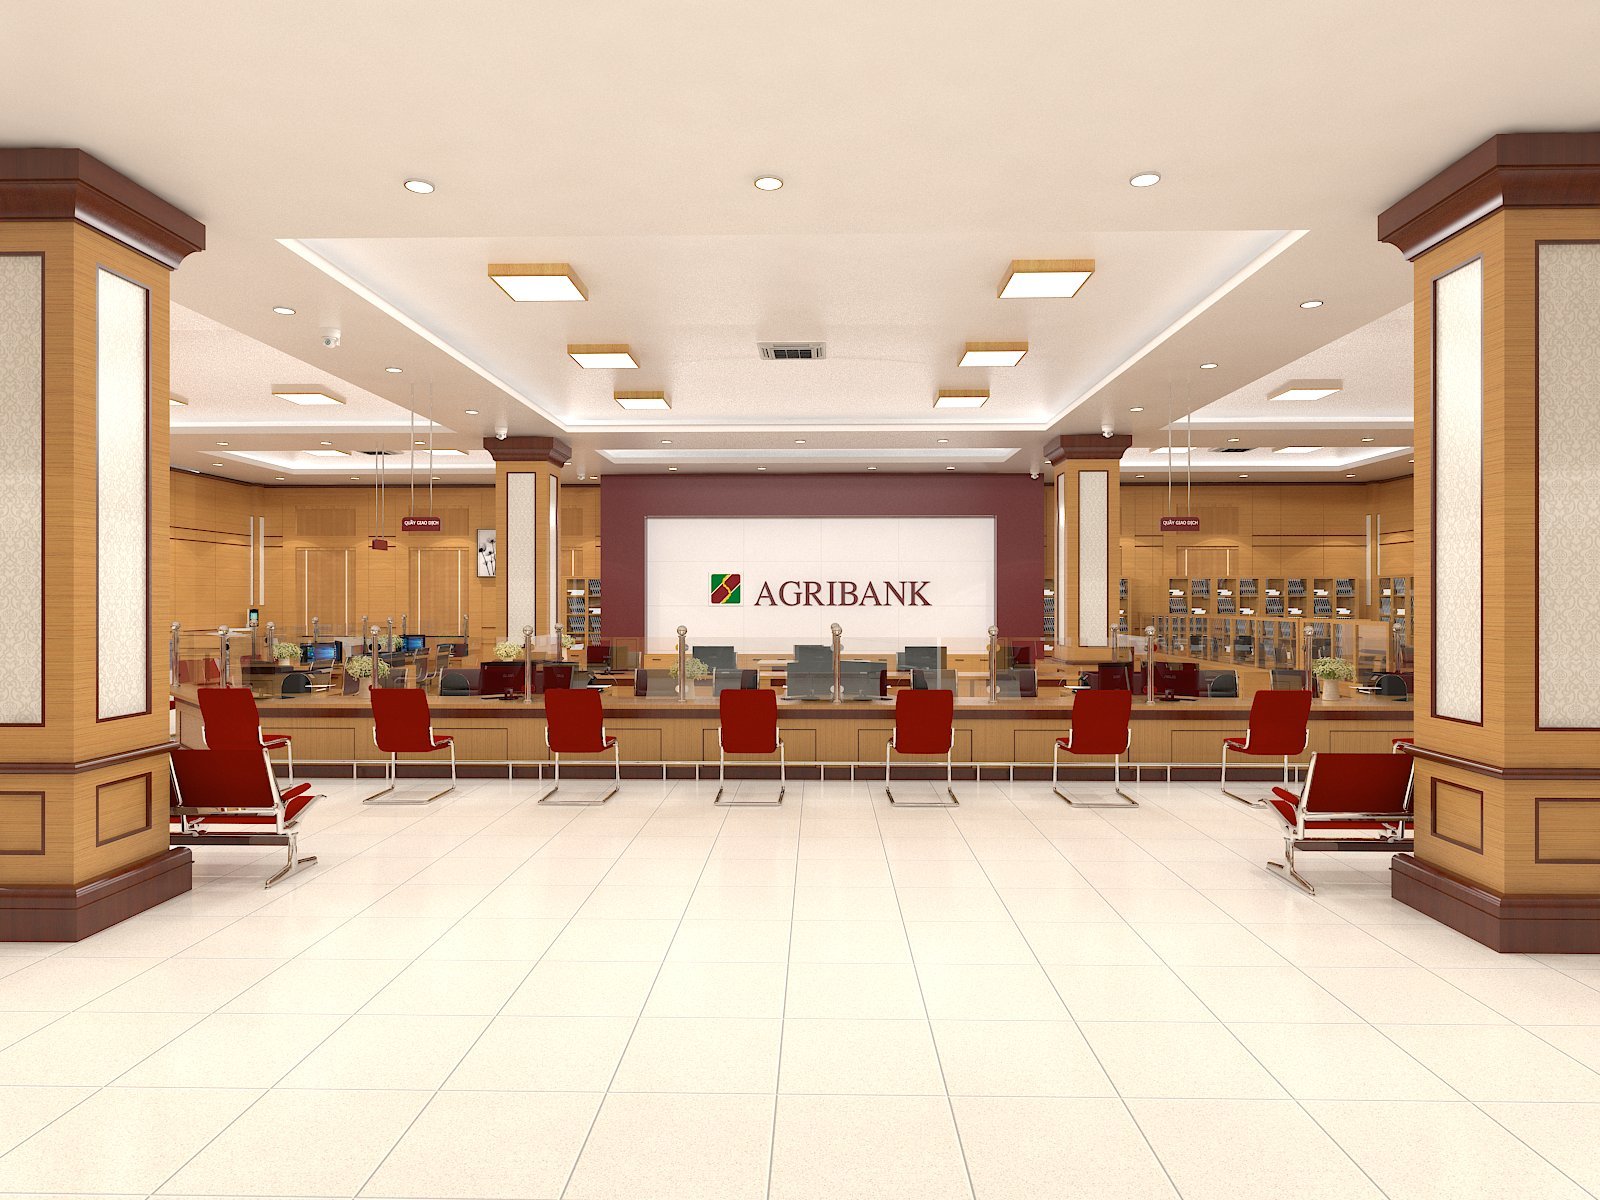 Ngân hàng Agribank sang trọng hiện đại hơn với sự kết hợp giữa đèn led Panel ốp trần và đèn led âm trần